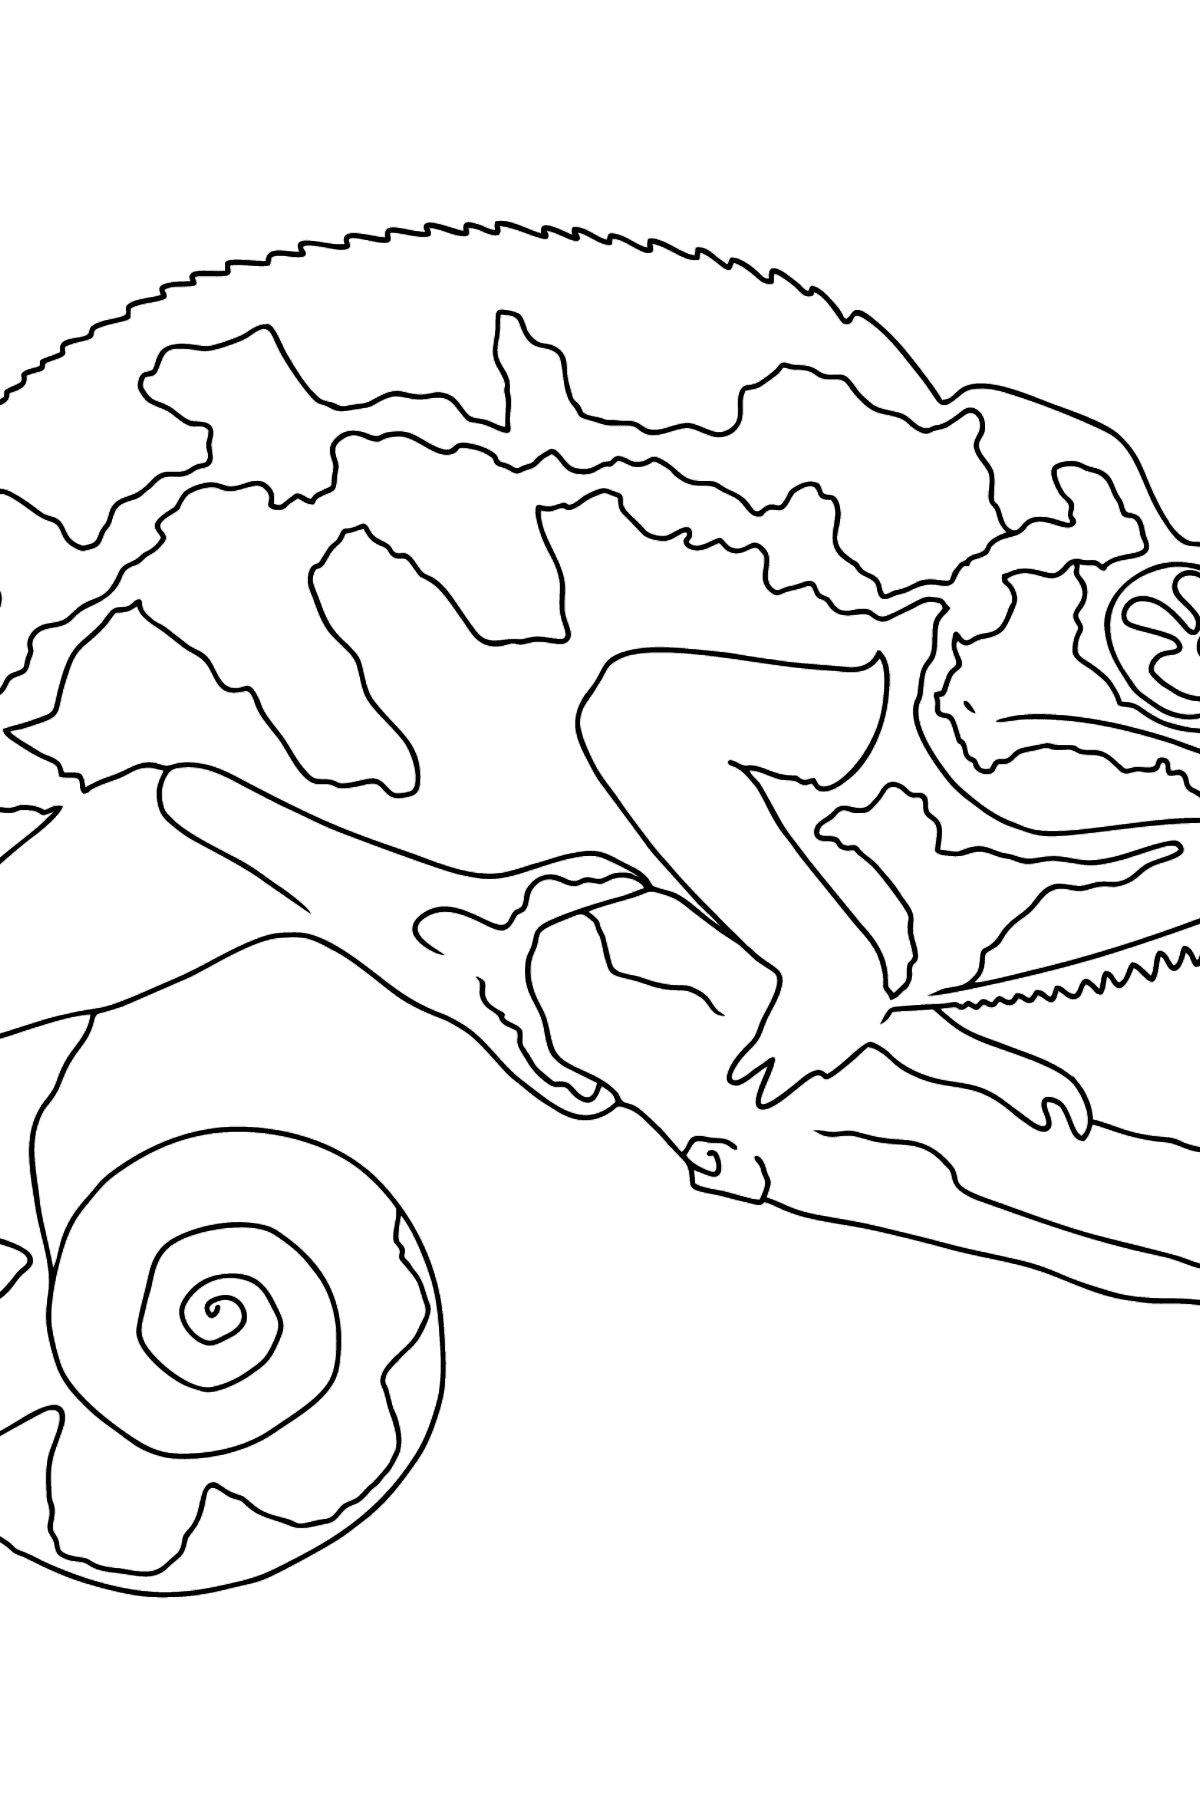 Desenho de camaleão para colorir (fácil) - Imagens para Colorir para Crianças